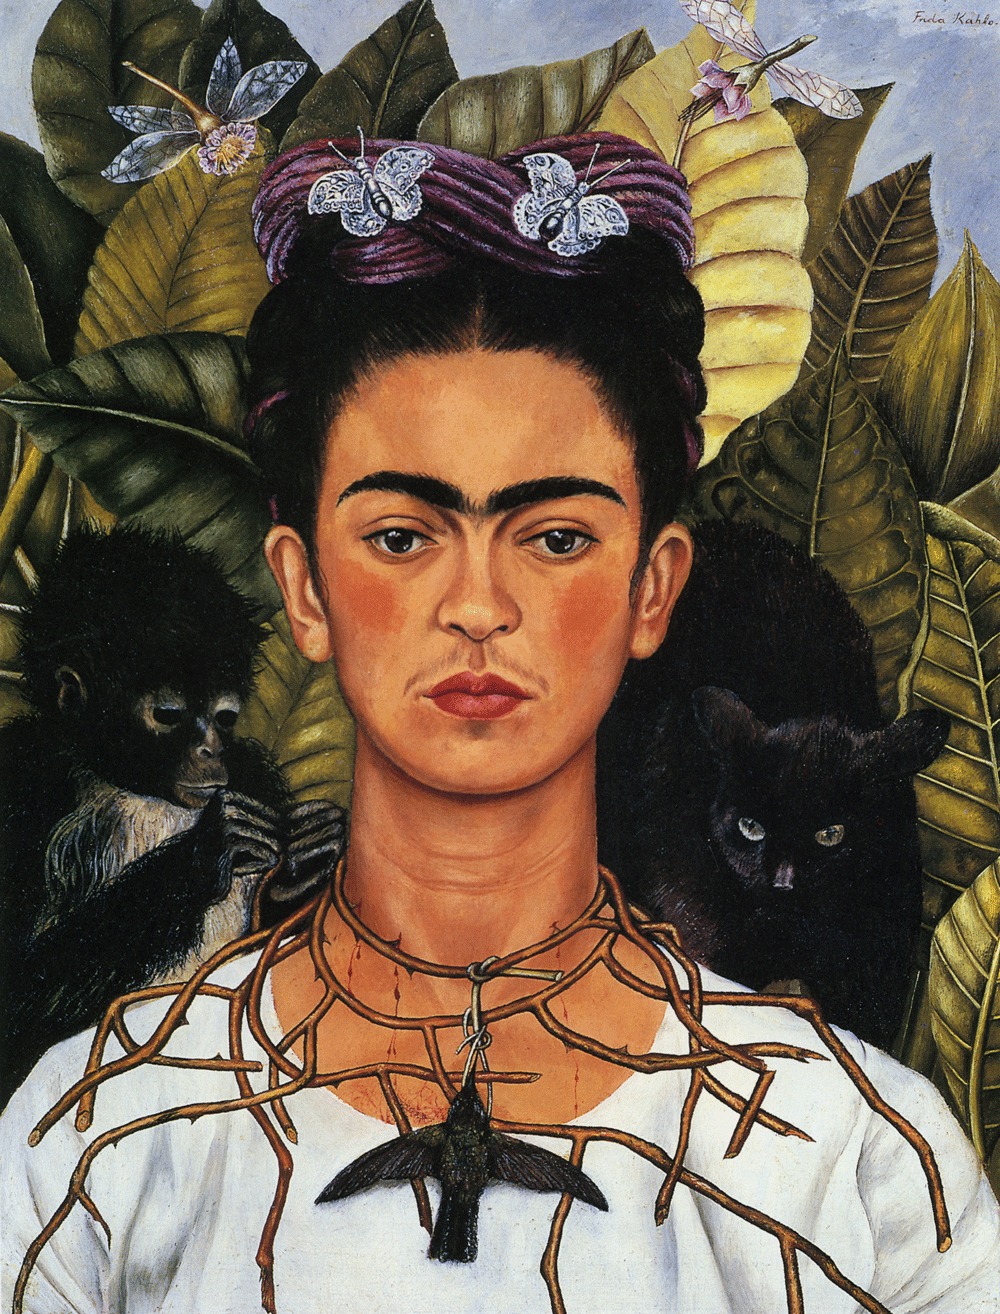 Frida Kahlo - 6. Juli 1907 - 13. Juli 1954